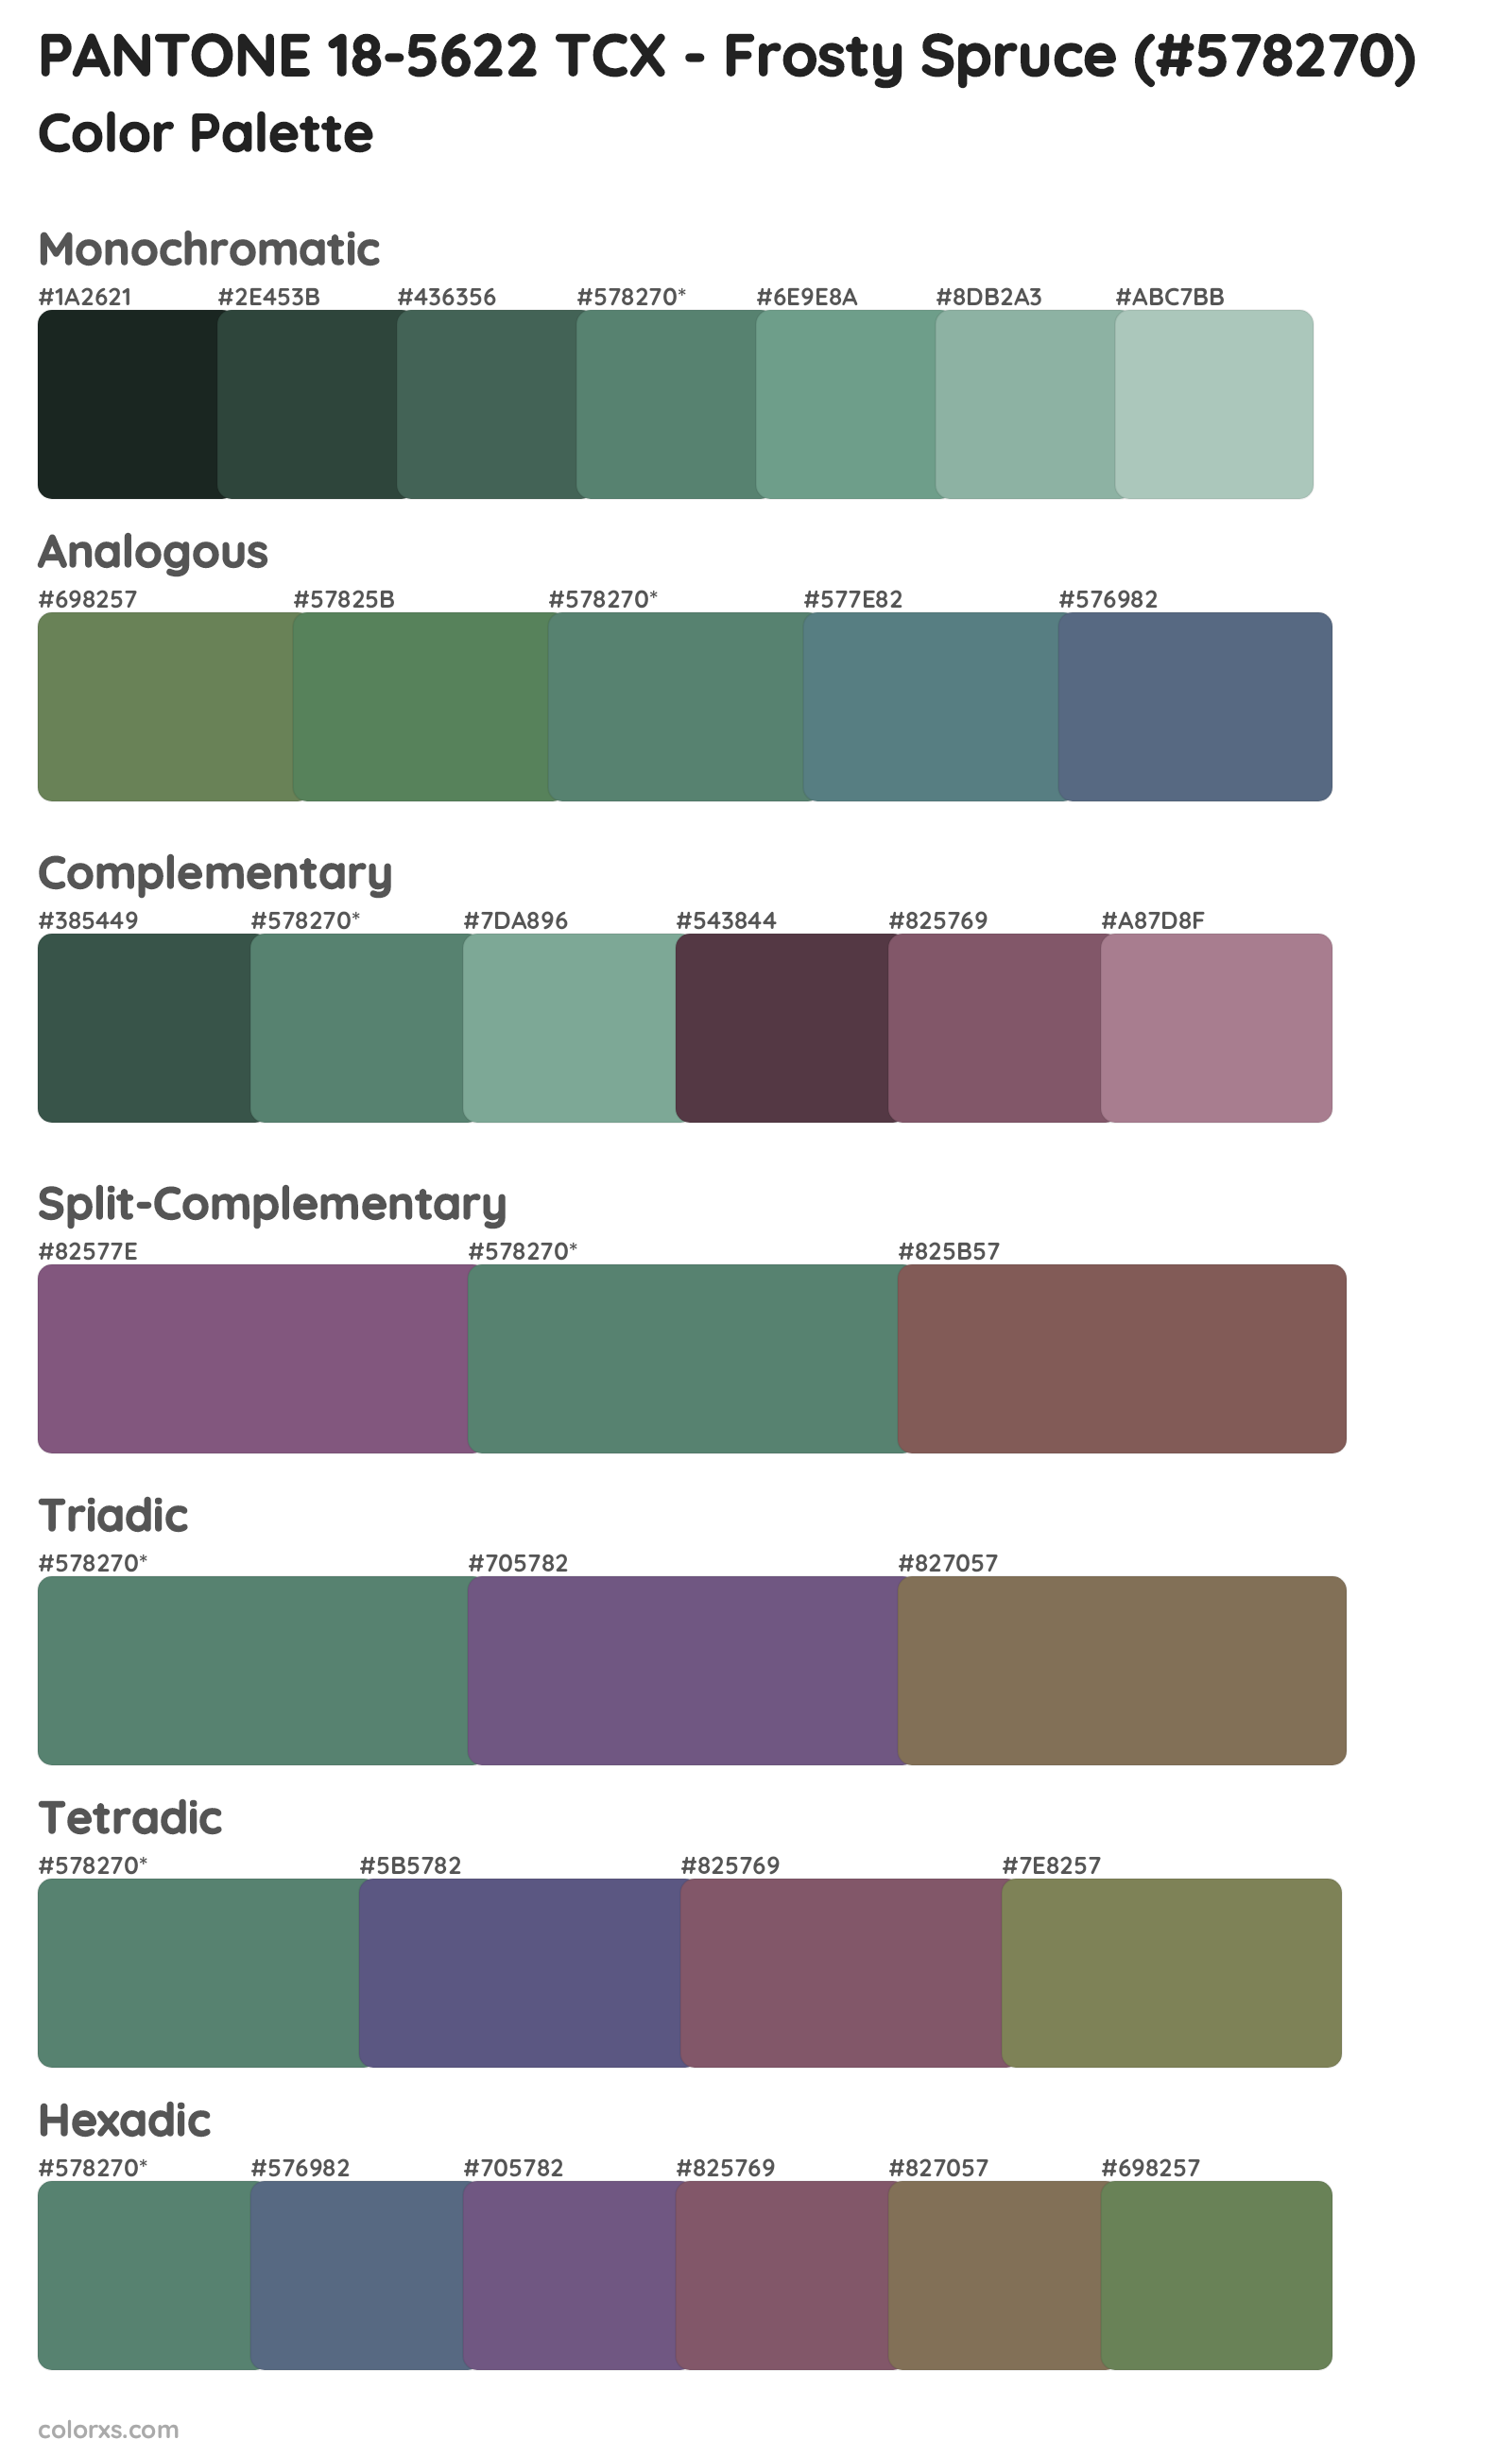 PANTONE 18-5622 TCX - Frosty Spruce Color Scheme Palettes